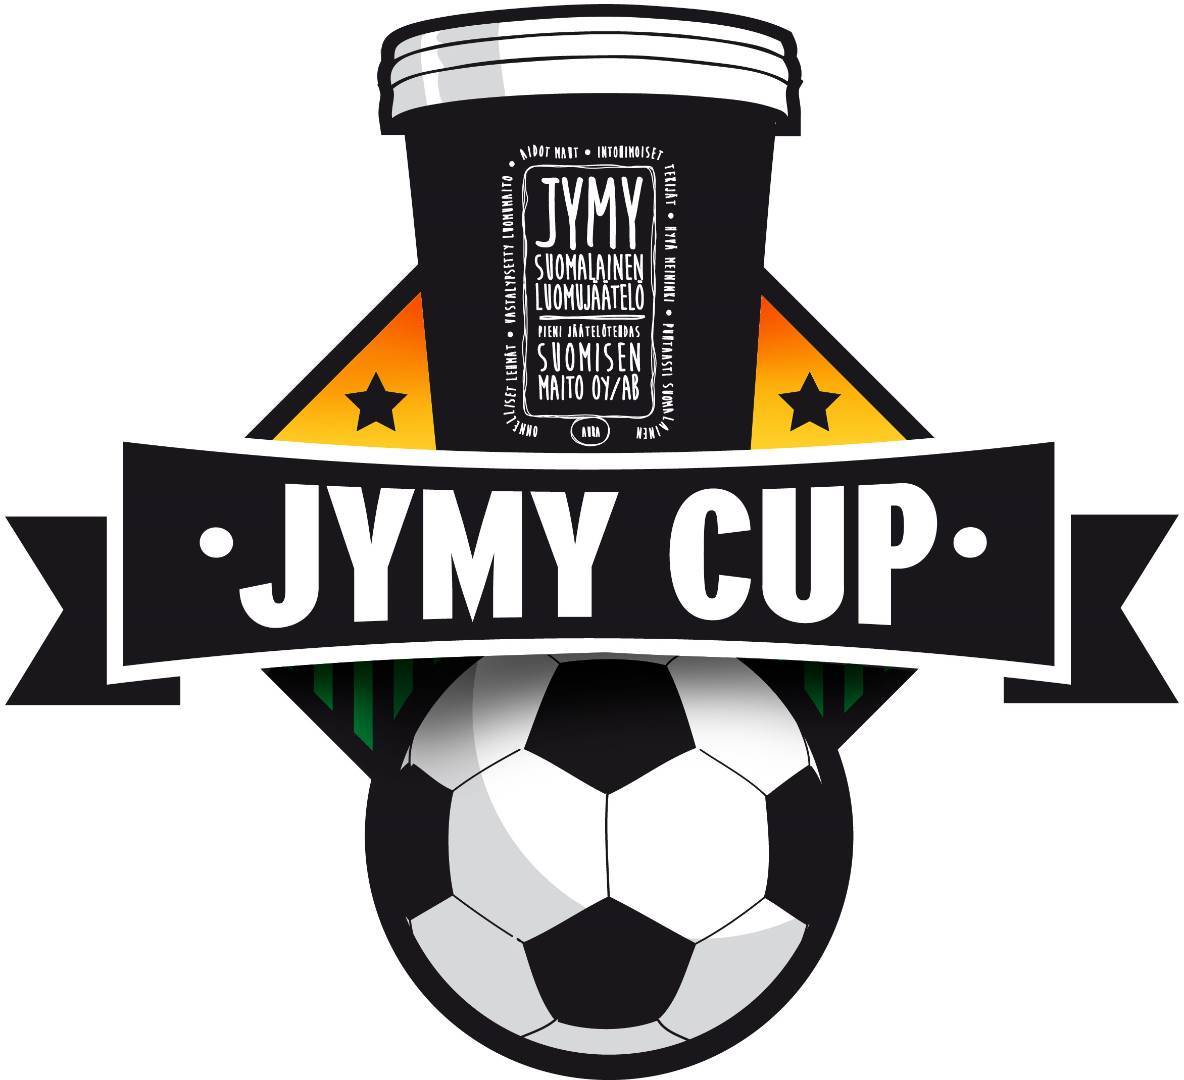 Jymy Cup 2018 ilmoittautumiset avattu!